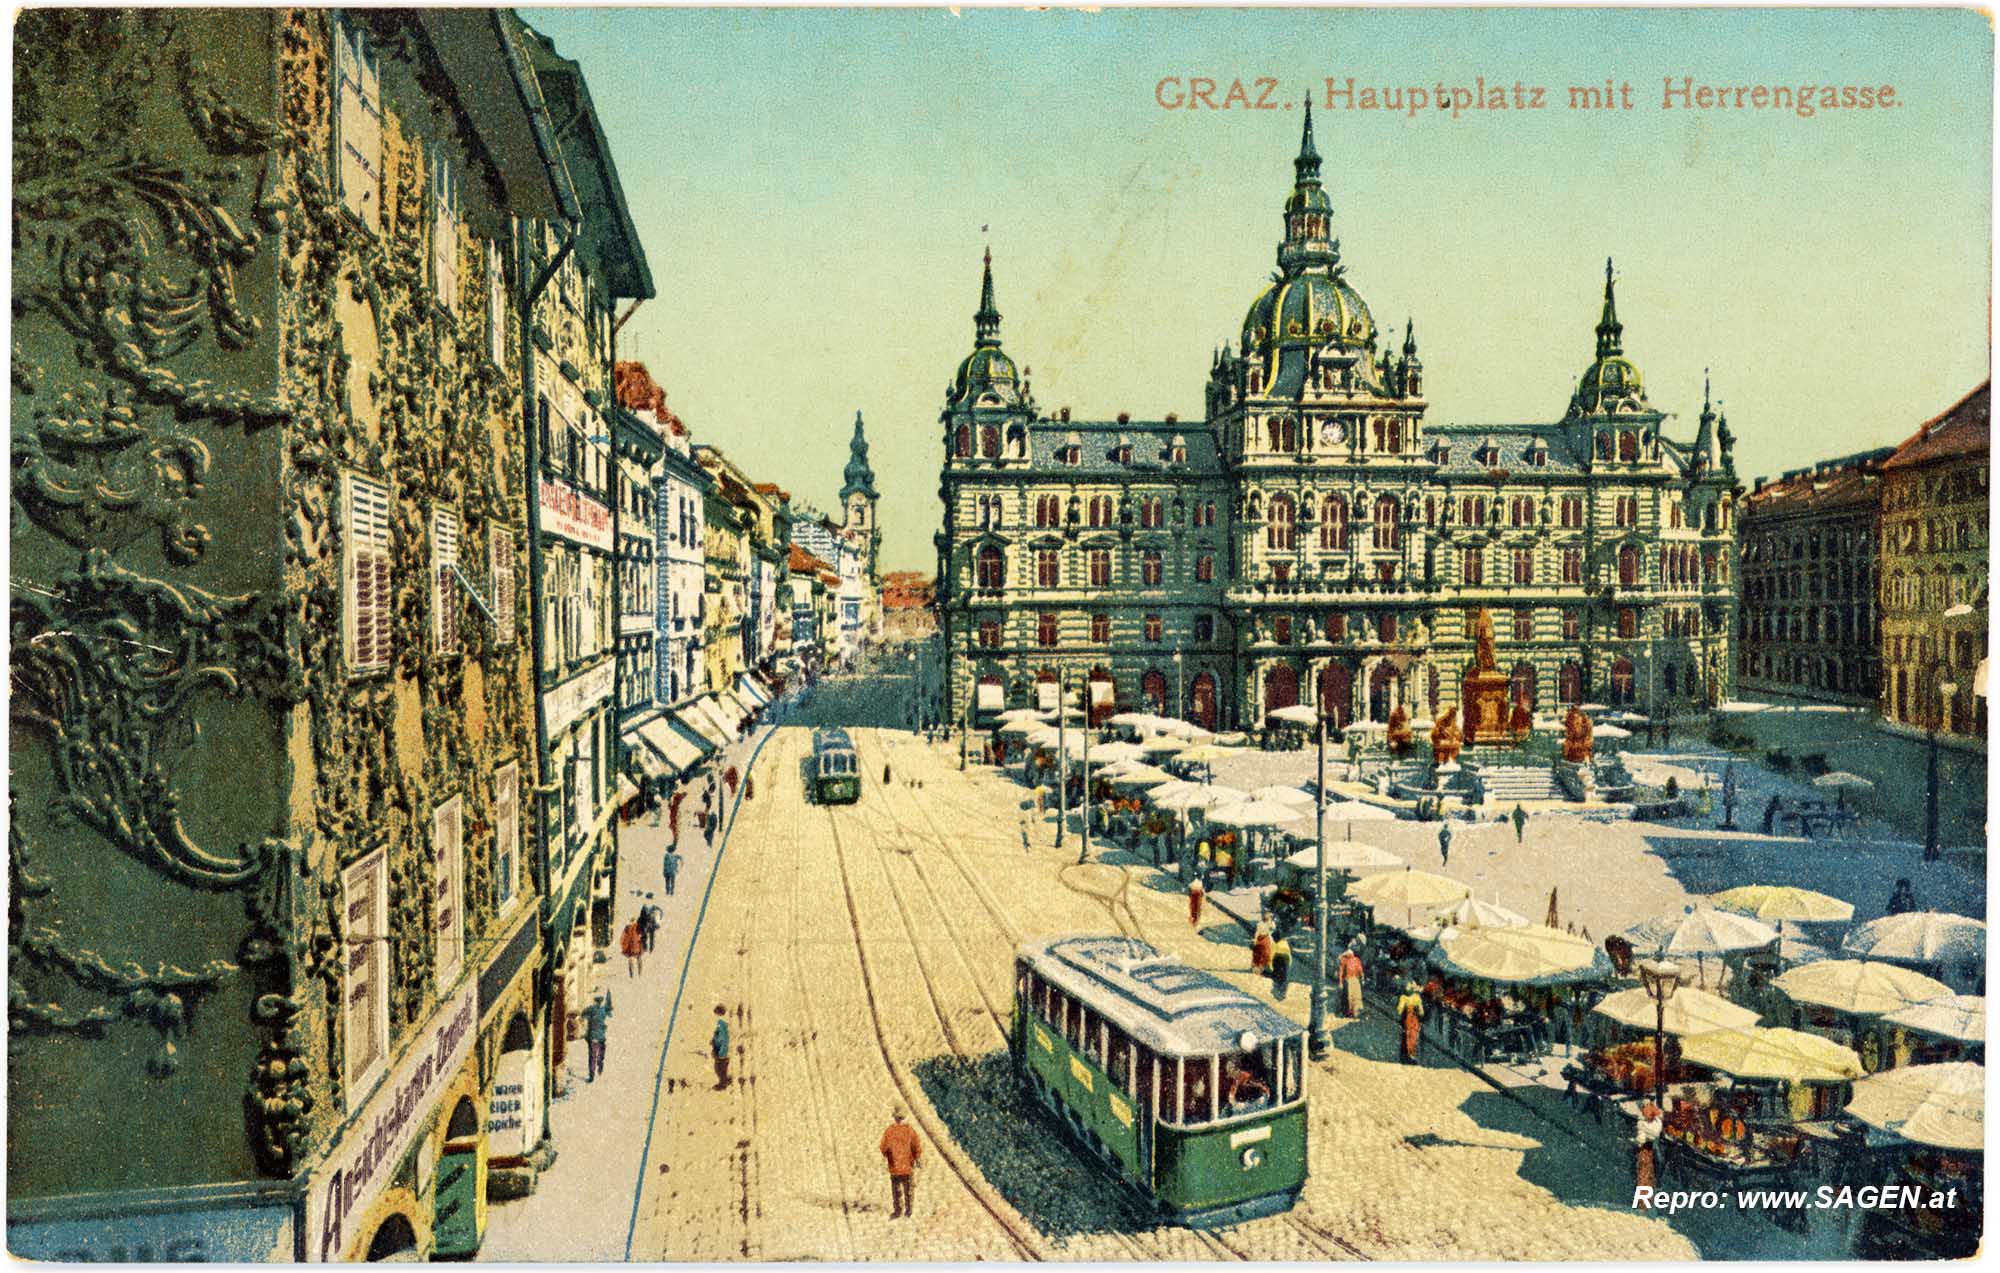 Graz, Hauptplatz mit Herrengasse im Jahr 1915